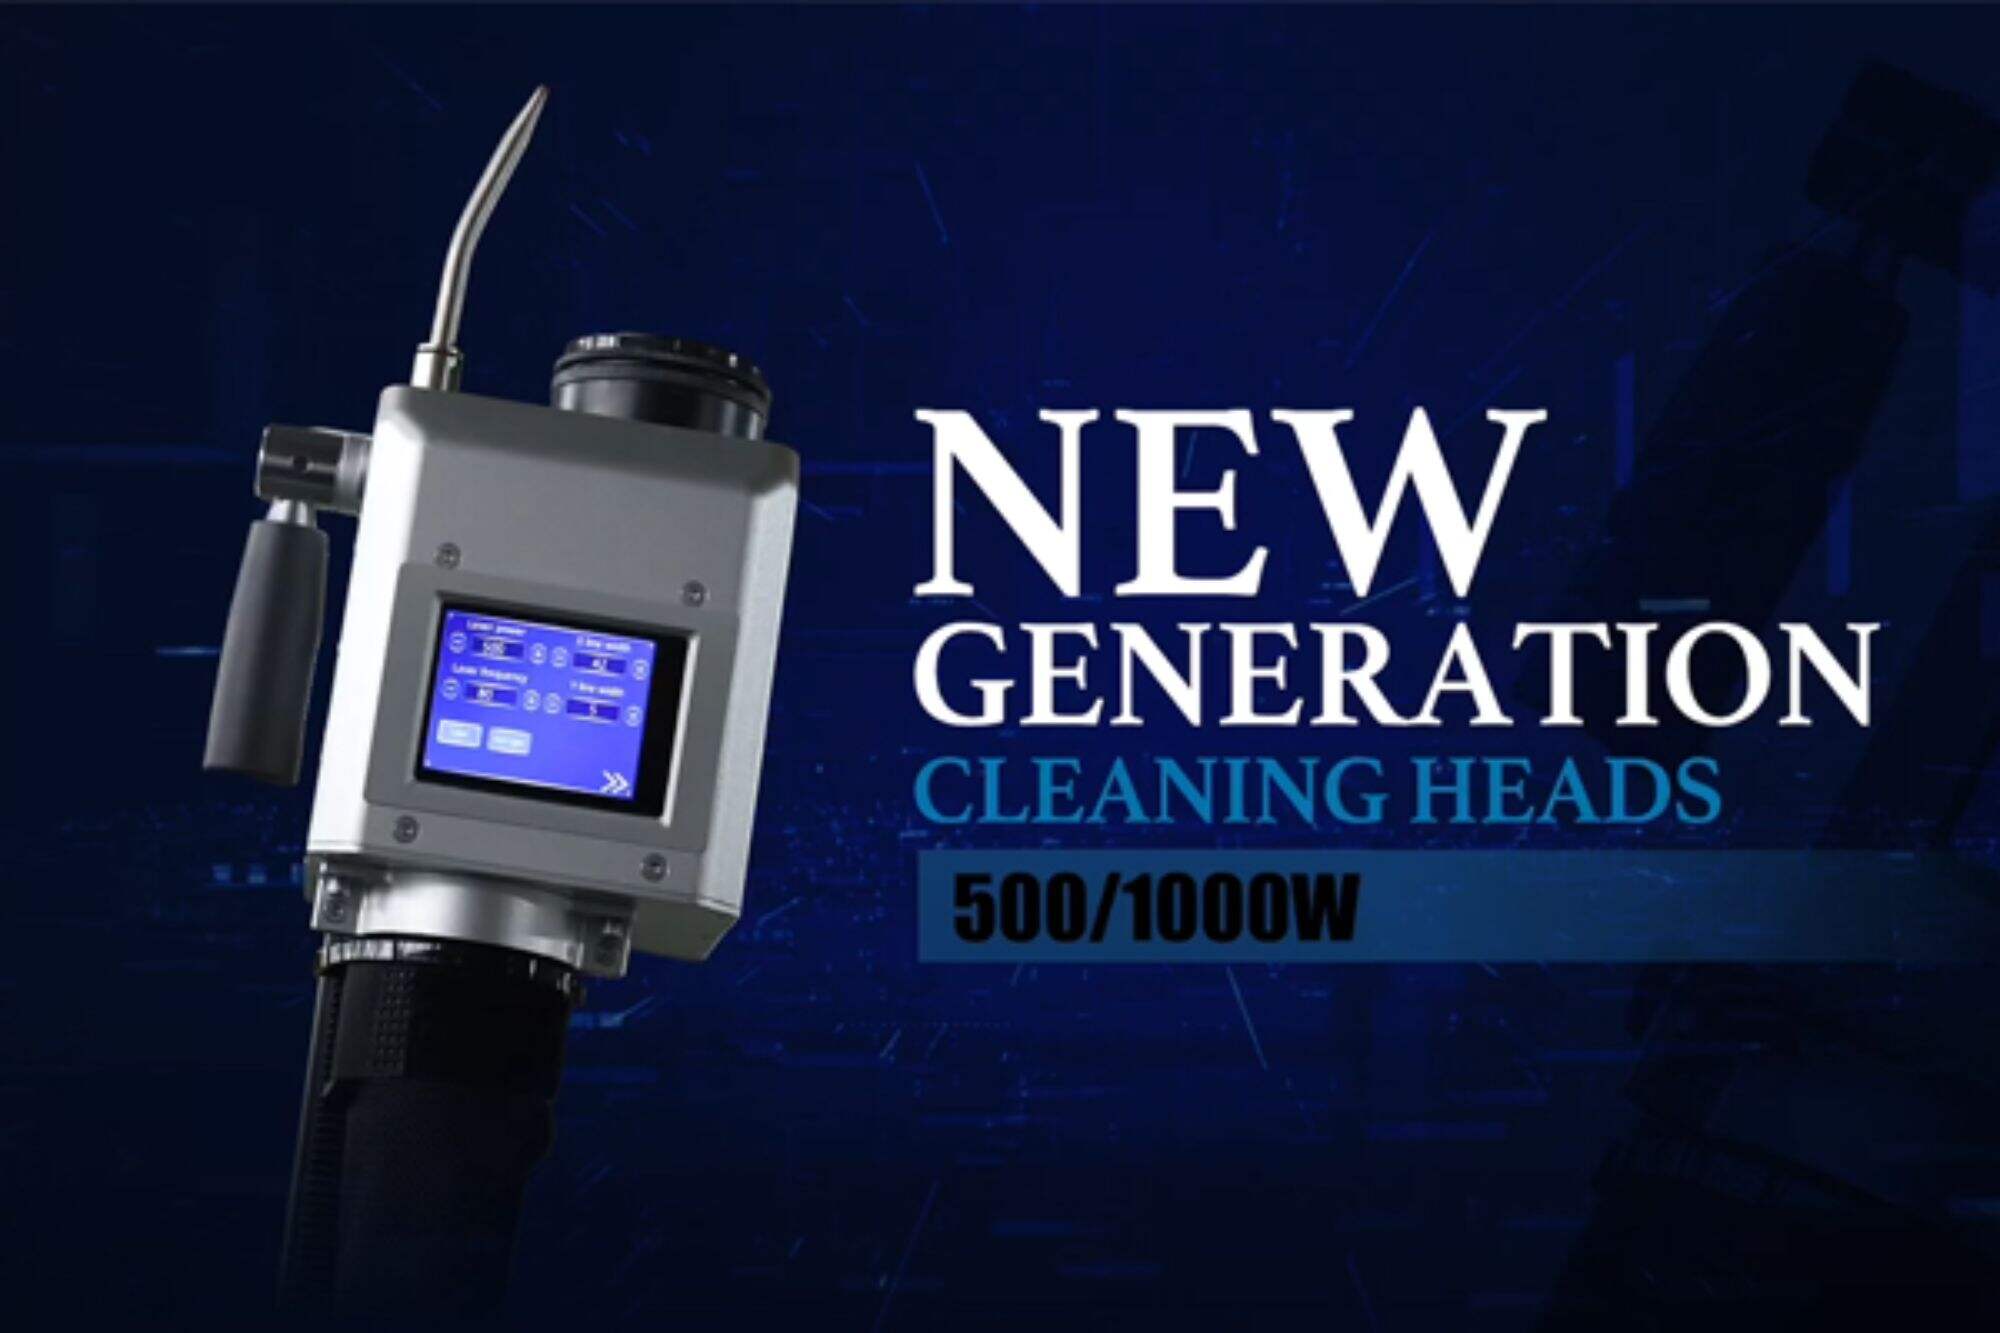 500W/1000W 펄스 레이저 클리닝 기계용 새로운 레이저 클리닝 헤드